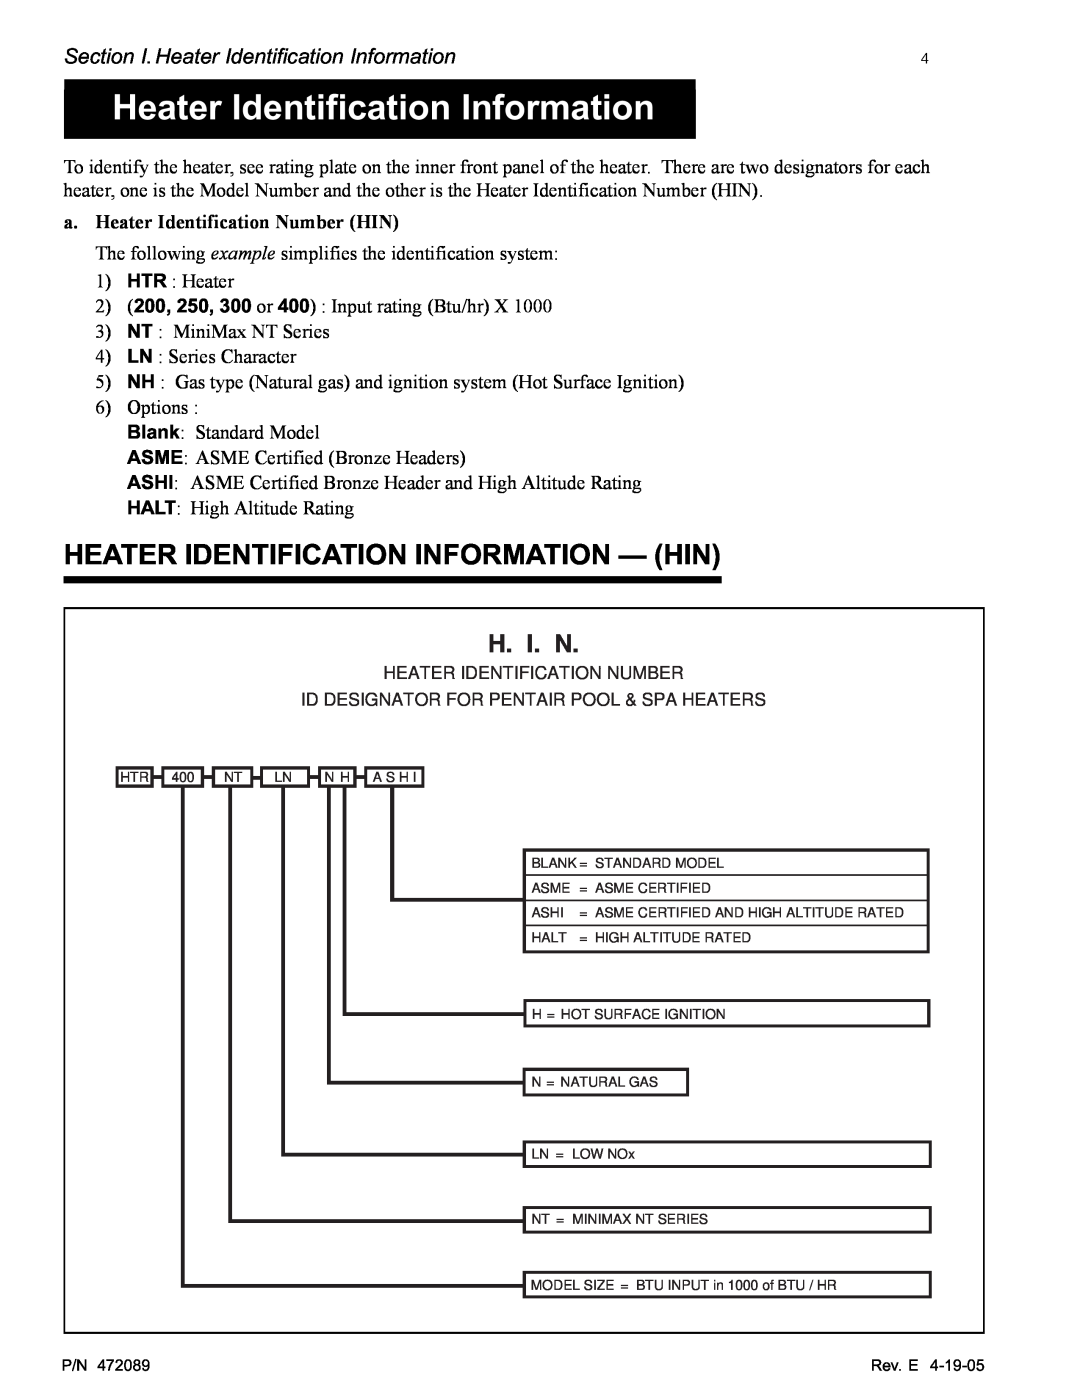 Pentair MiniMax NT LN Heater Identification Information - Hin, H. I. N, a.Heater Identification Number HIN 